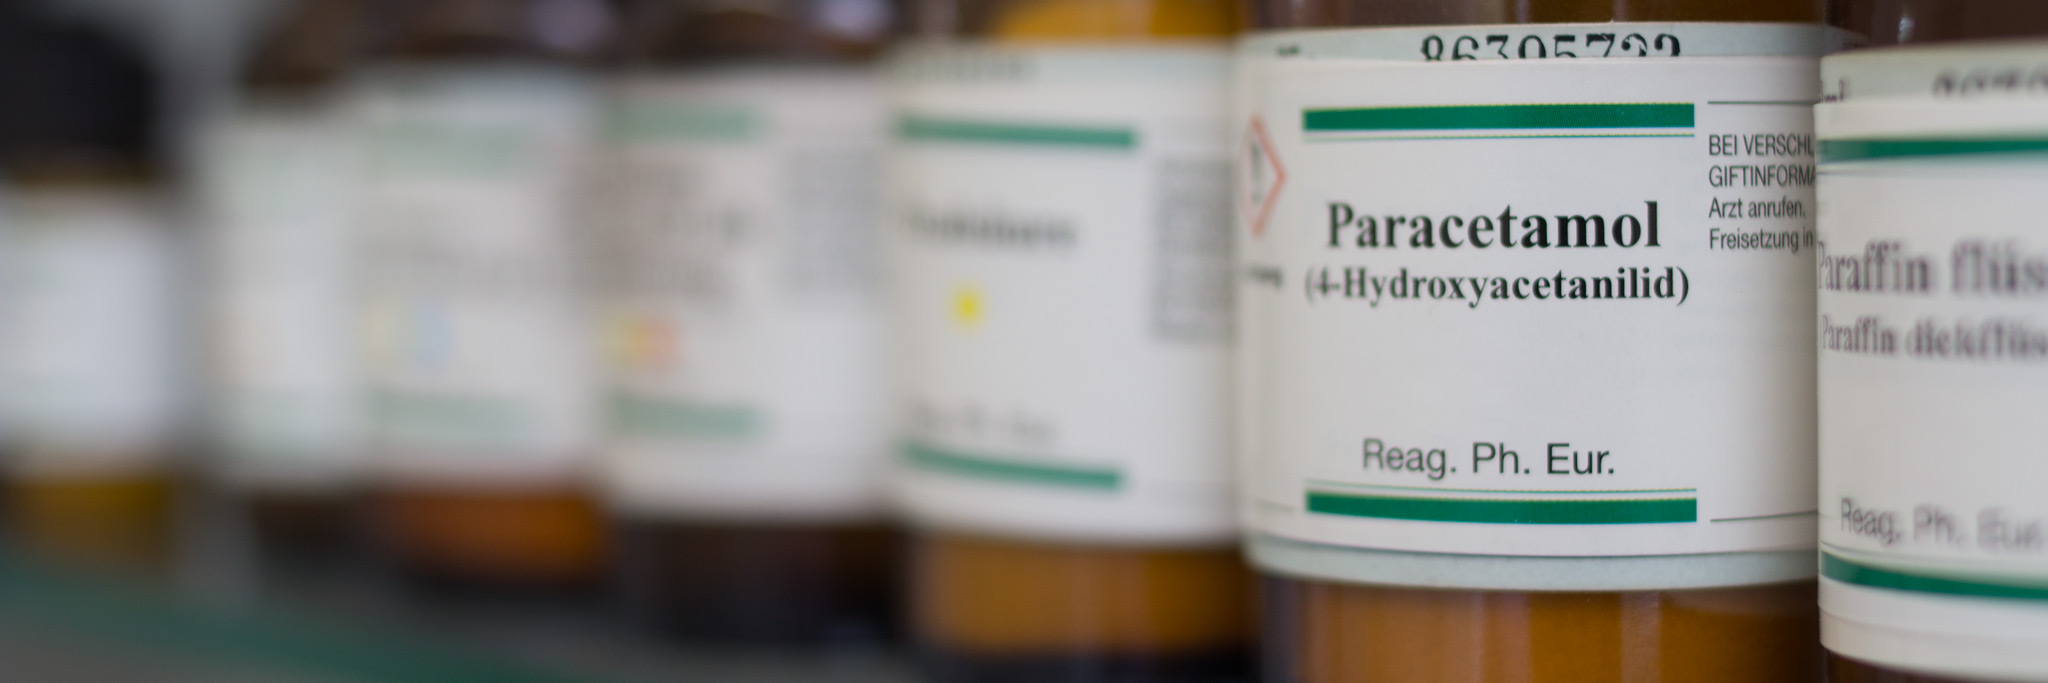 Eine Reihe von Medikamenten in einem Regal, auf einem Etikett ist "Paracetamol" zu lesen.